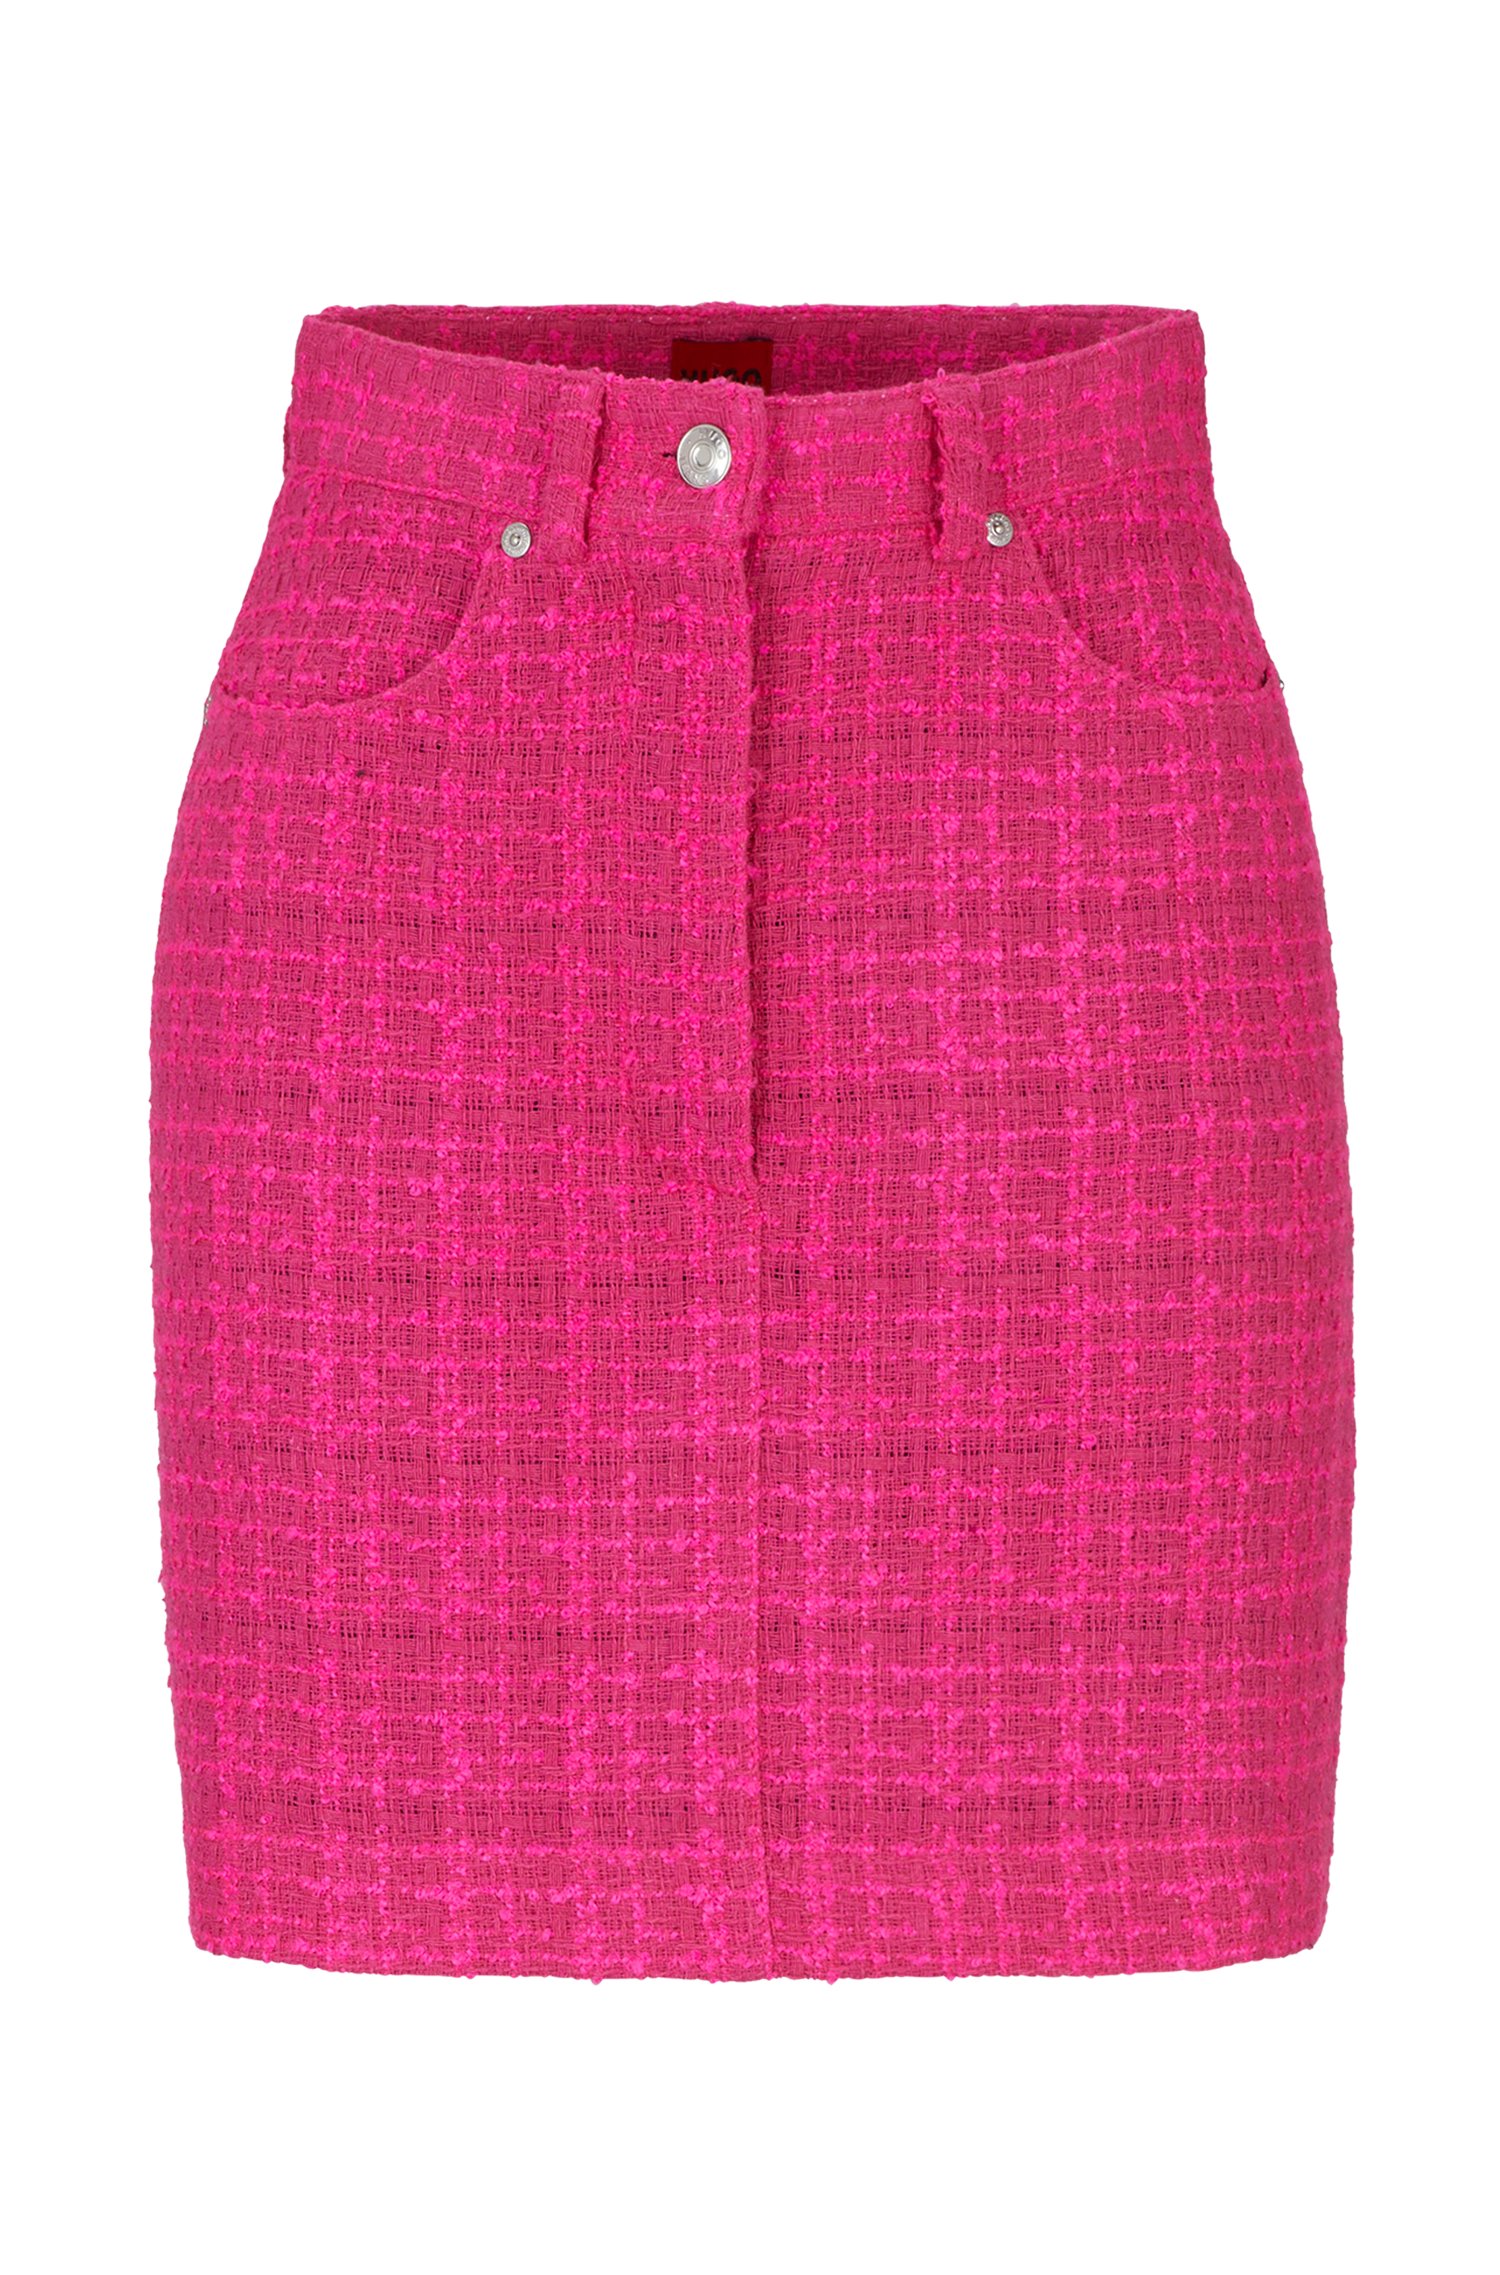 Minifalda con detalles metálicos en tejido bouclé